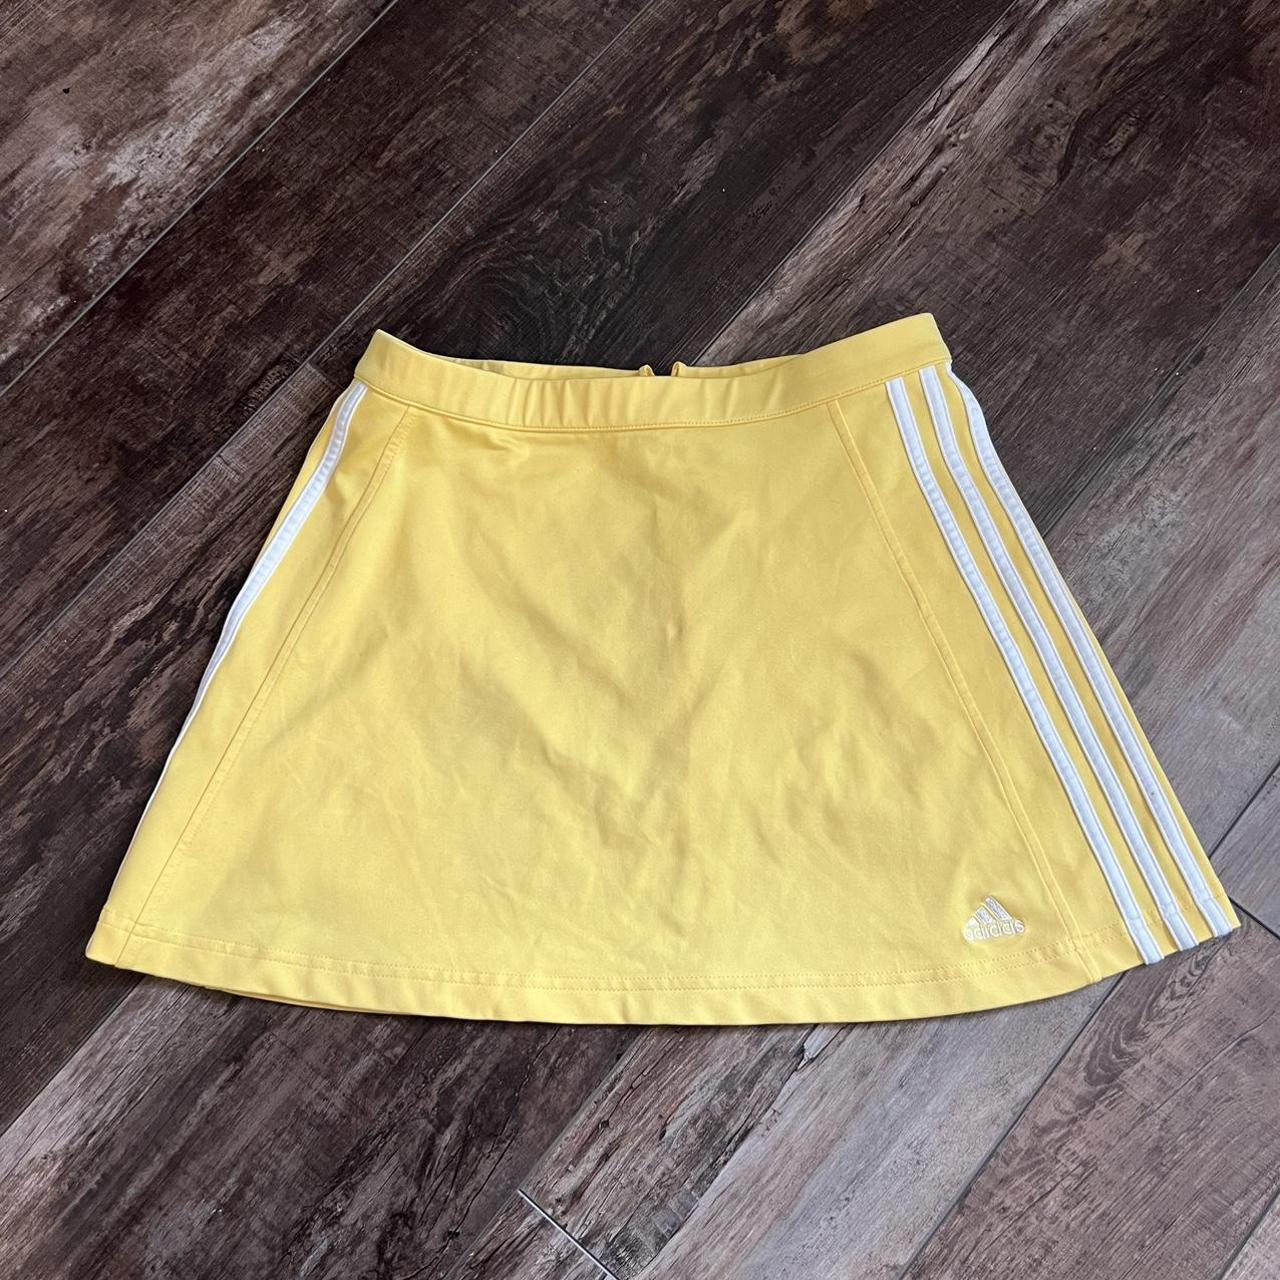 Adidas Women's Yellow Skirt